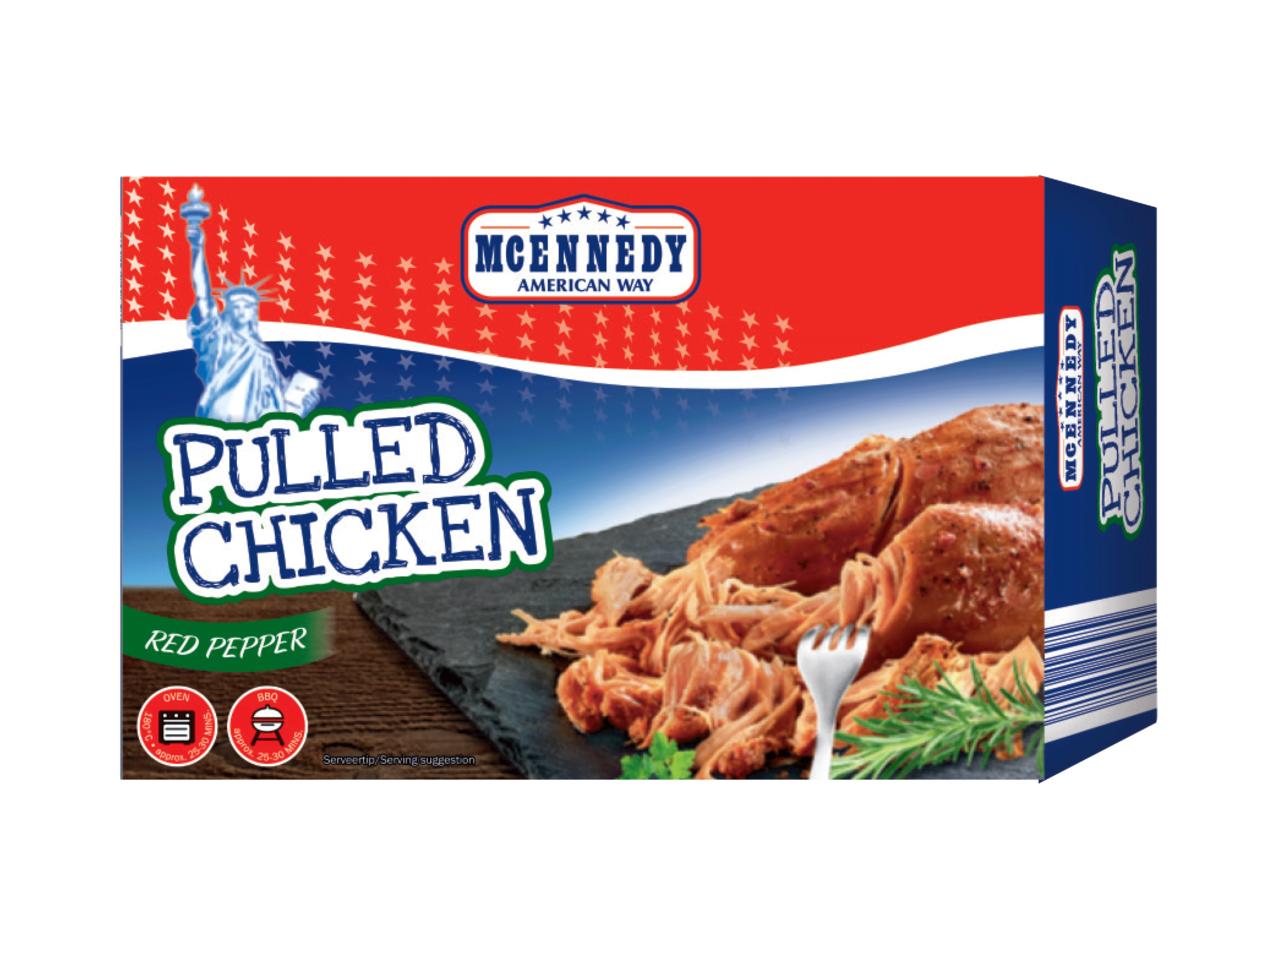 MCENNEDY(R) Pulled Chicken